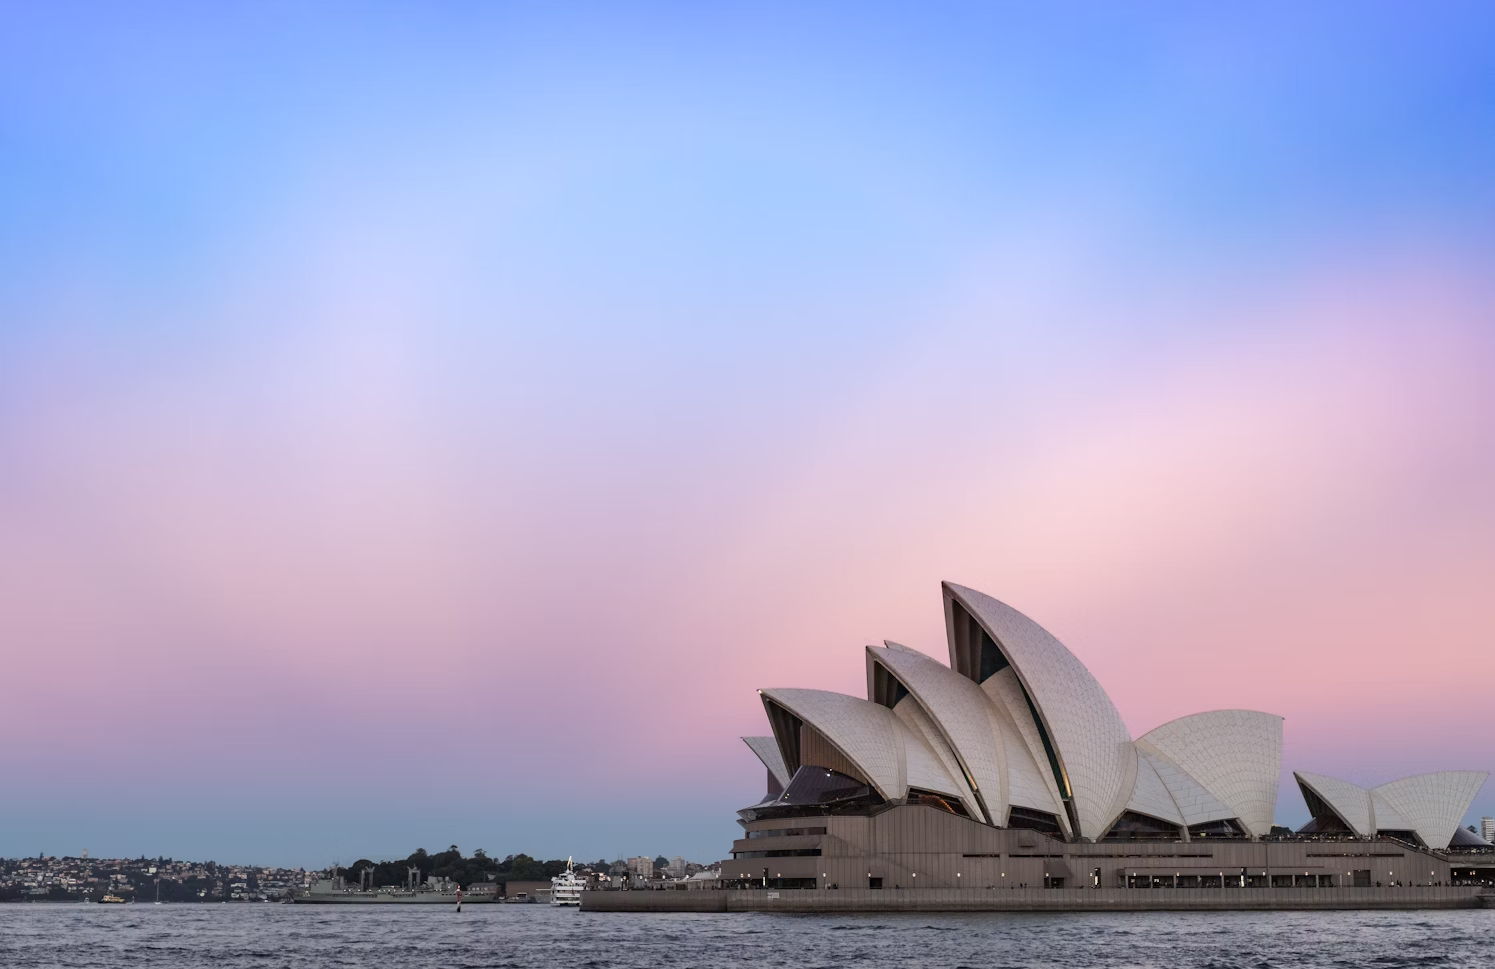 La Opera de Sydney, otro de los atractivos turísticos que hacen de Australia el mejor lugar para estudiar inglés